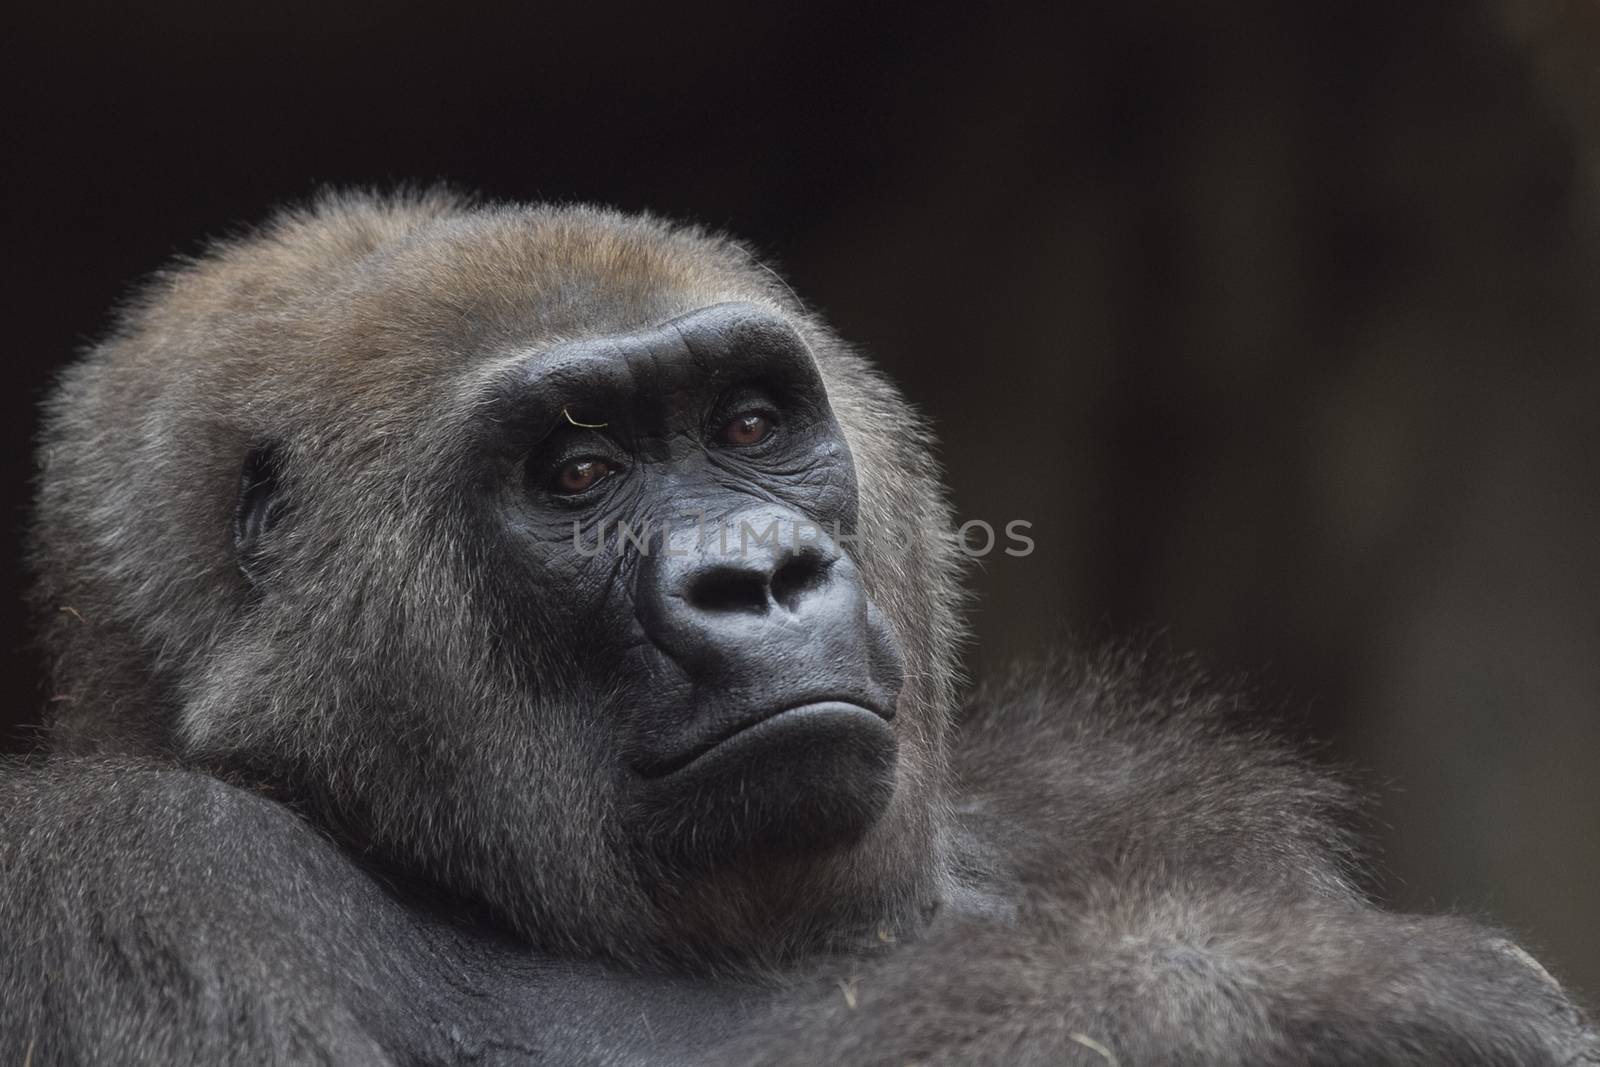 Gorilla portrait by ozkanzozmen